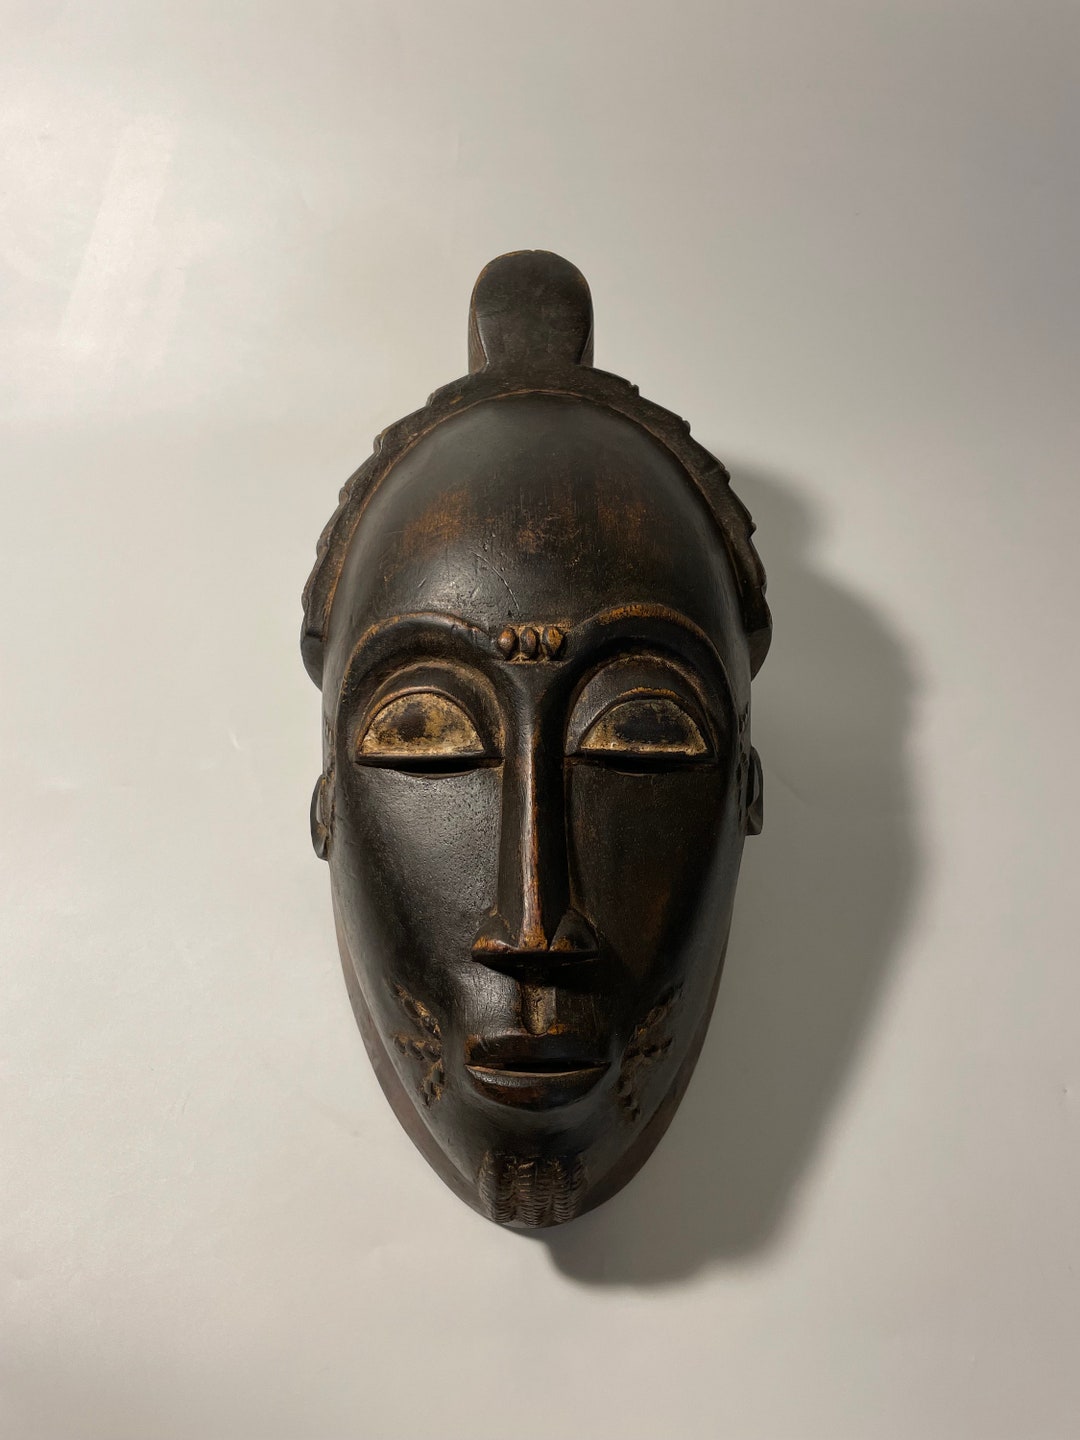 Baoulé mask, African Art, African Wall Decor, Home Decor, Gift